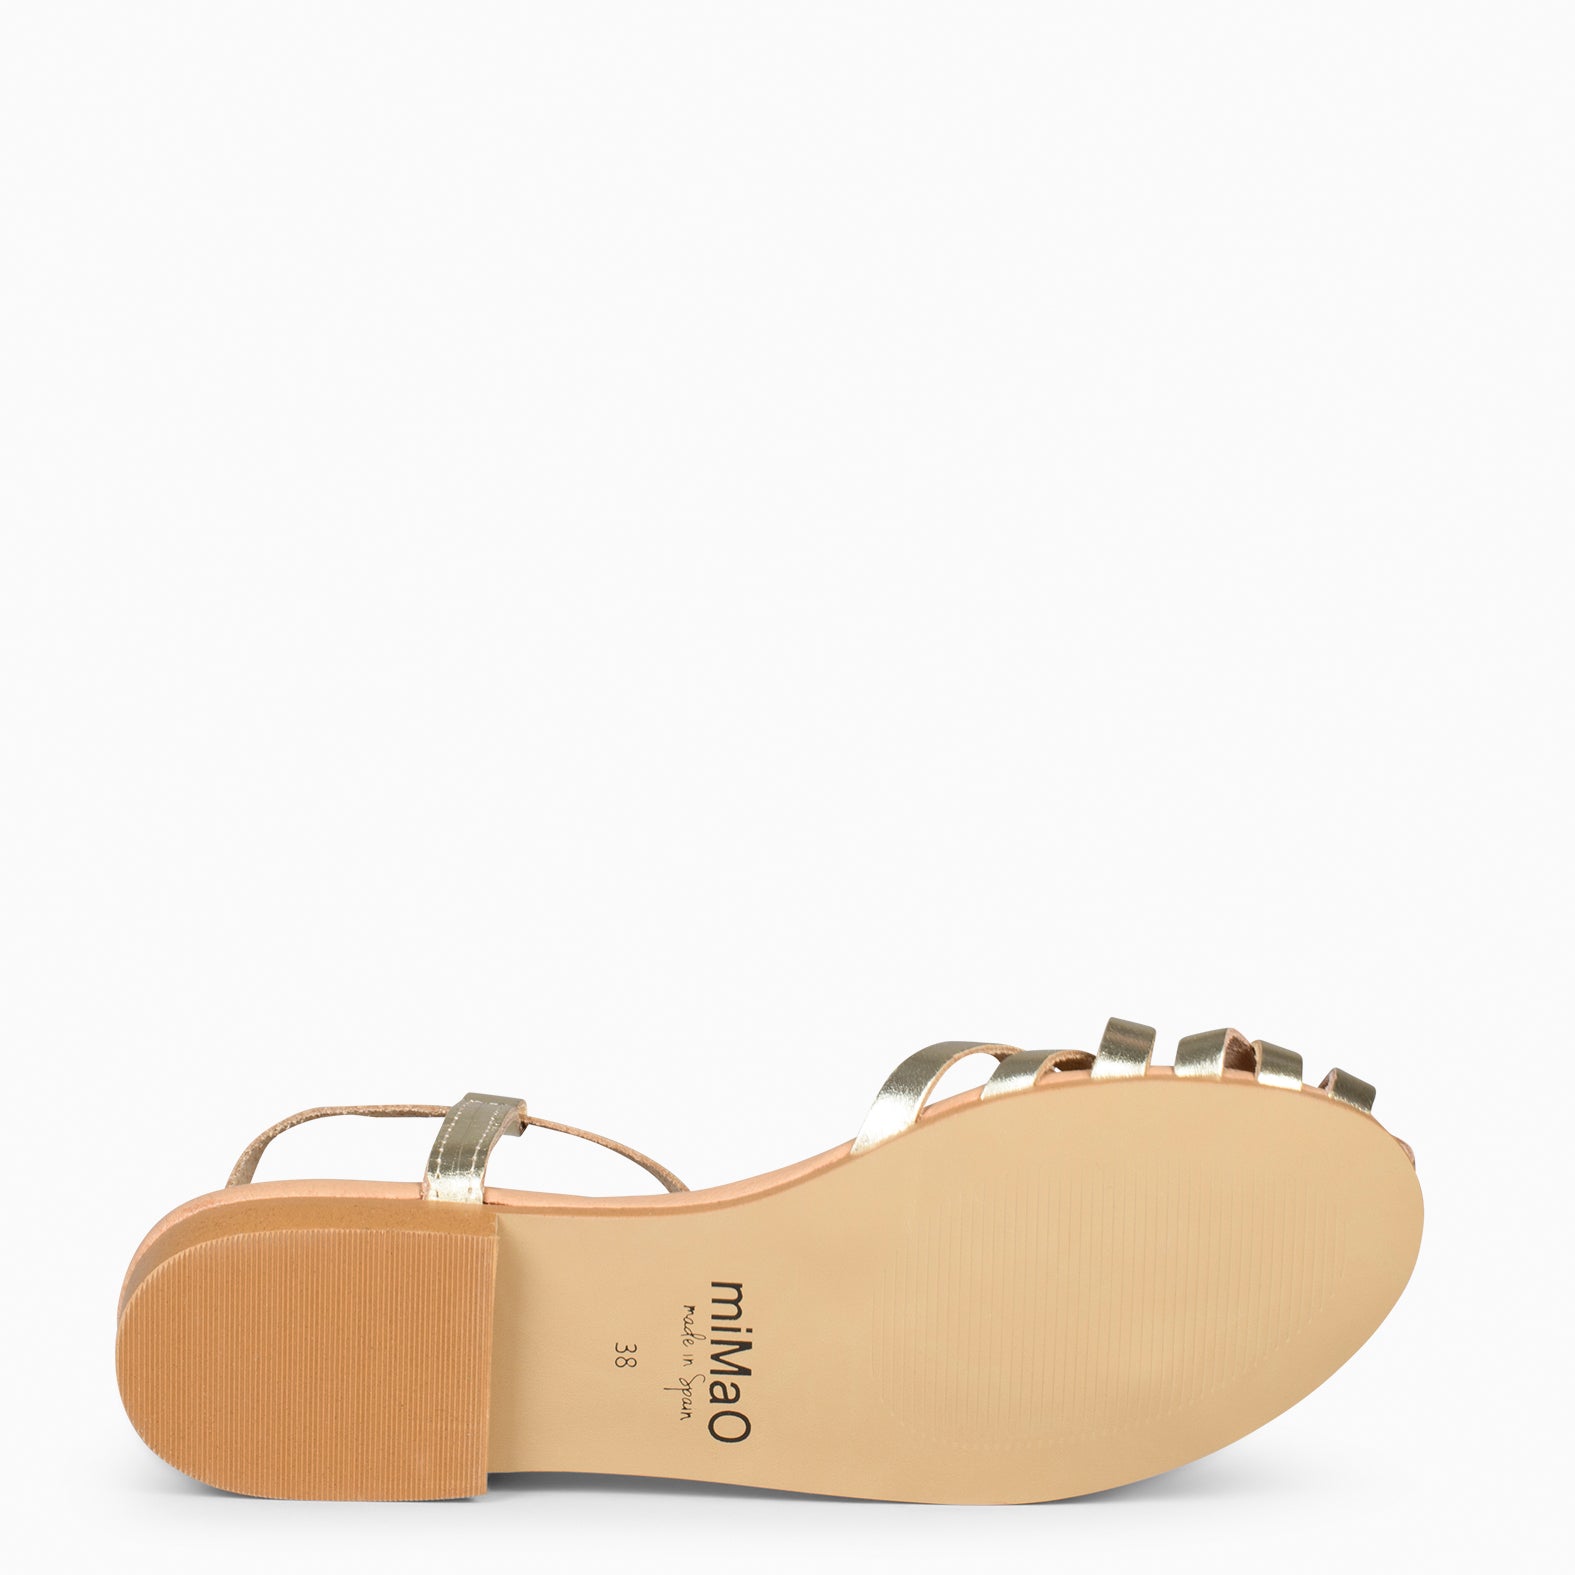 BEACH - GOLDEN Braided Flat Sandals 